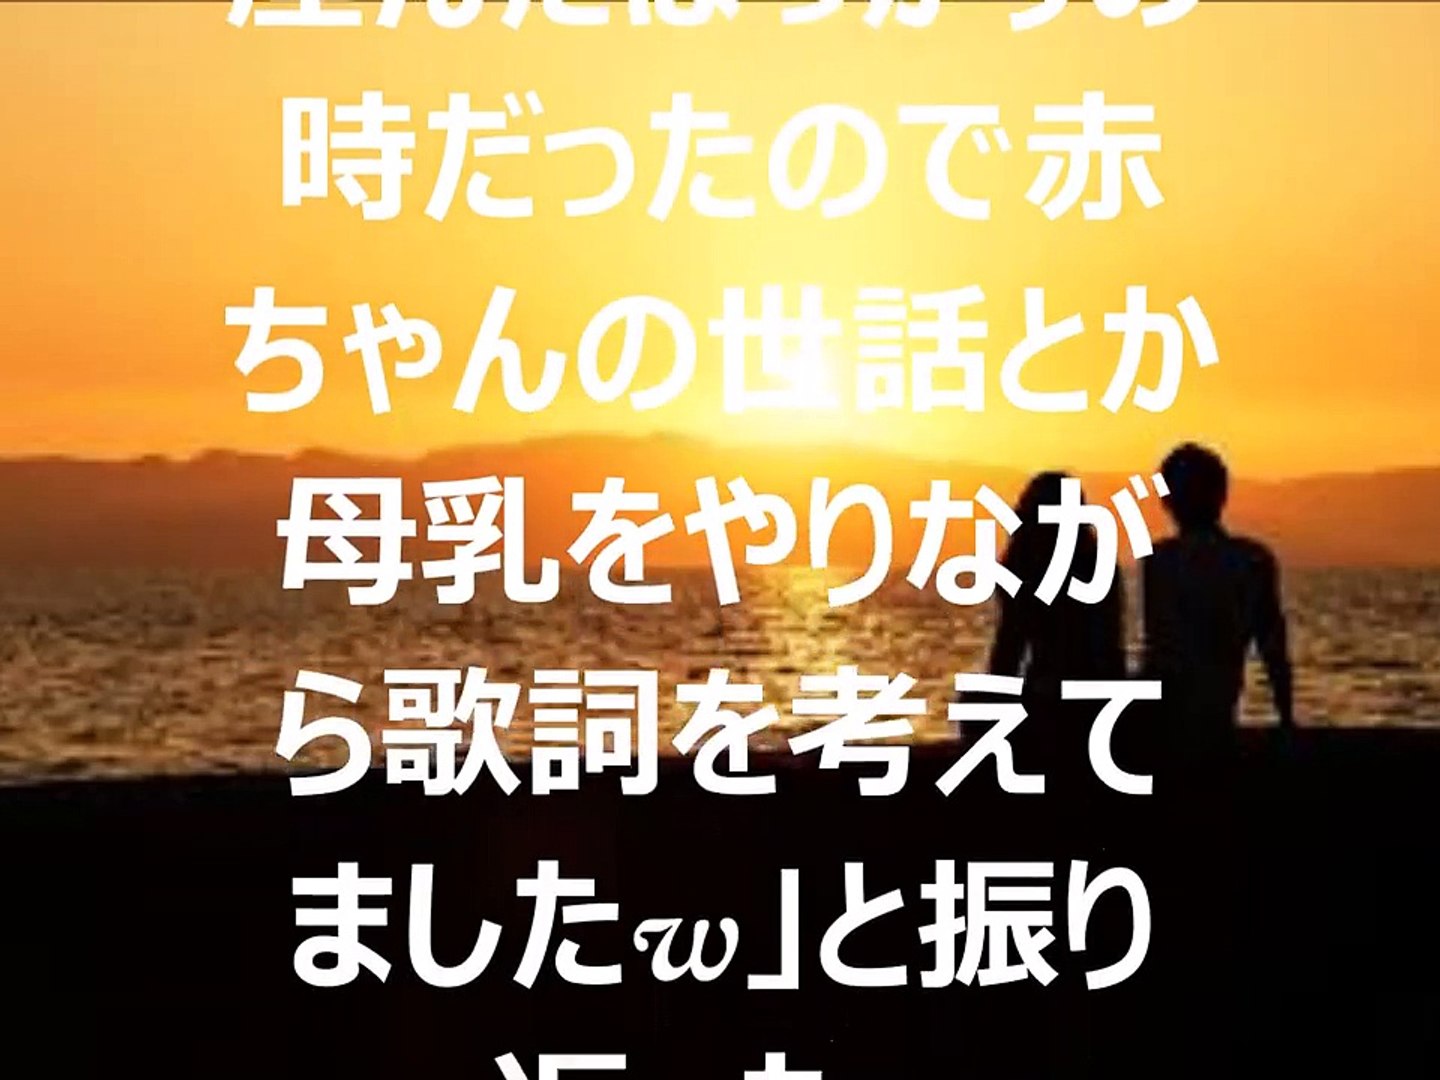 Exile Atsushi Ai No More ドラマ ナオミとカナコ 主題歌 Video Dailymotion